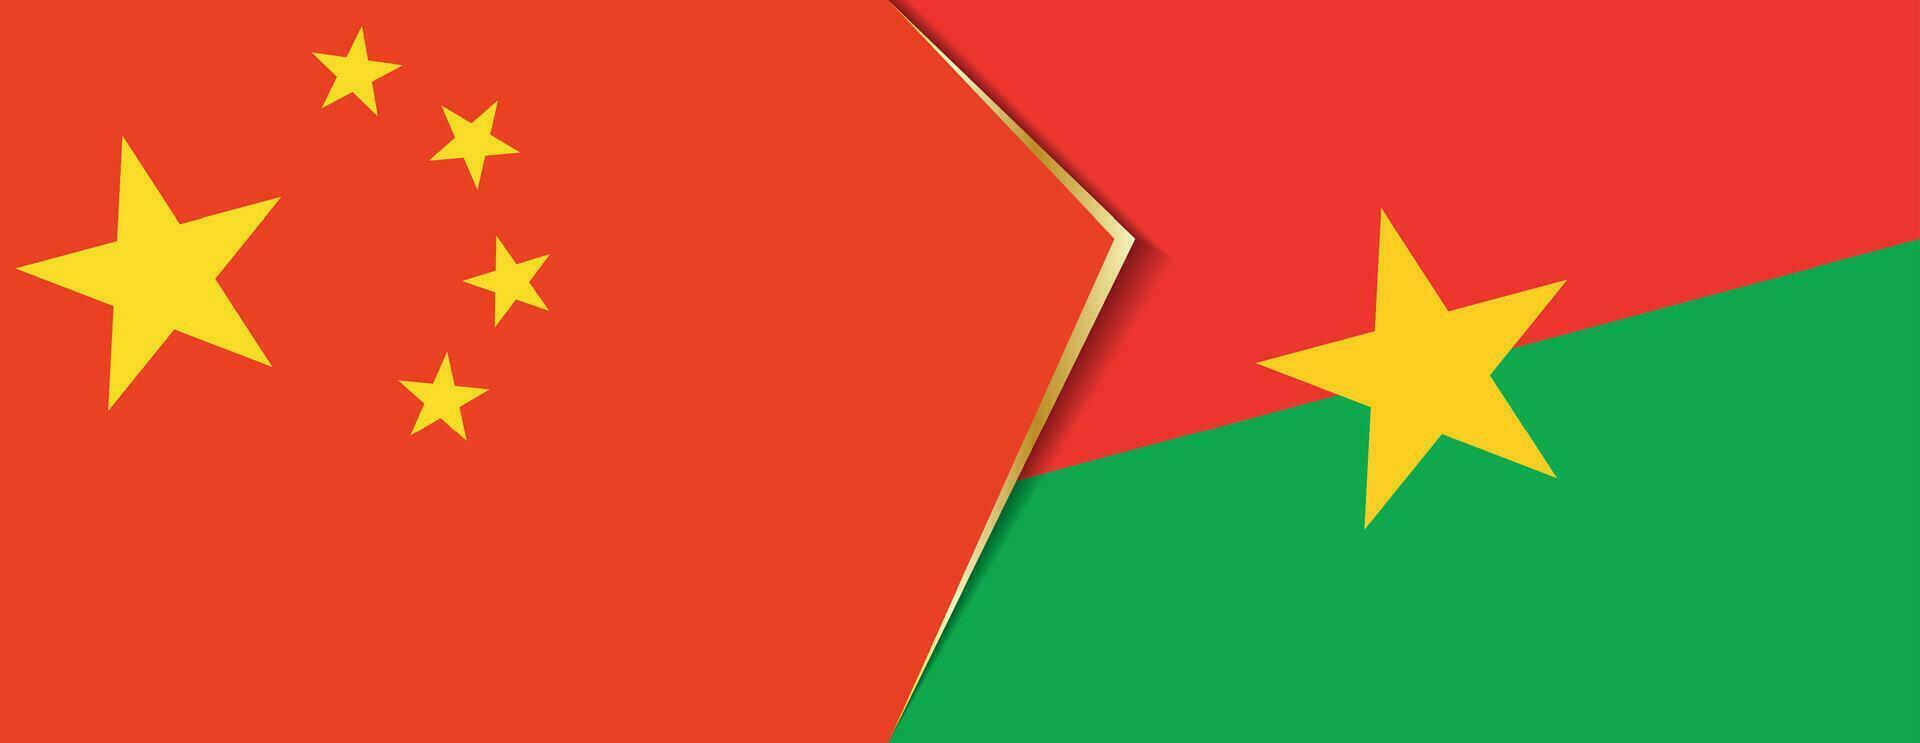 Kina och Burkina faso flaggor, två vektor flaggor.